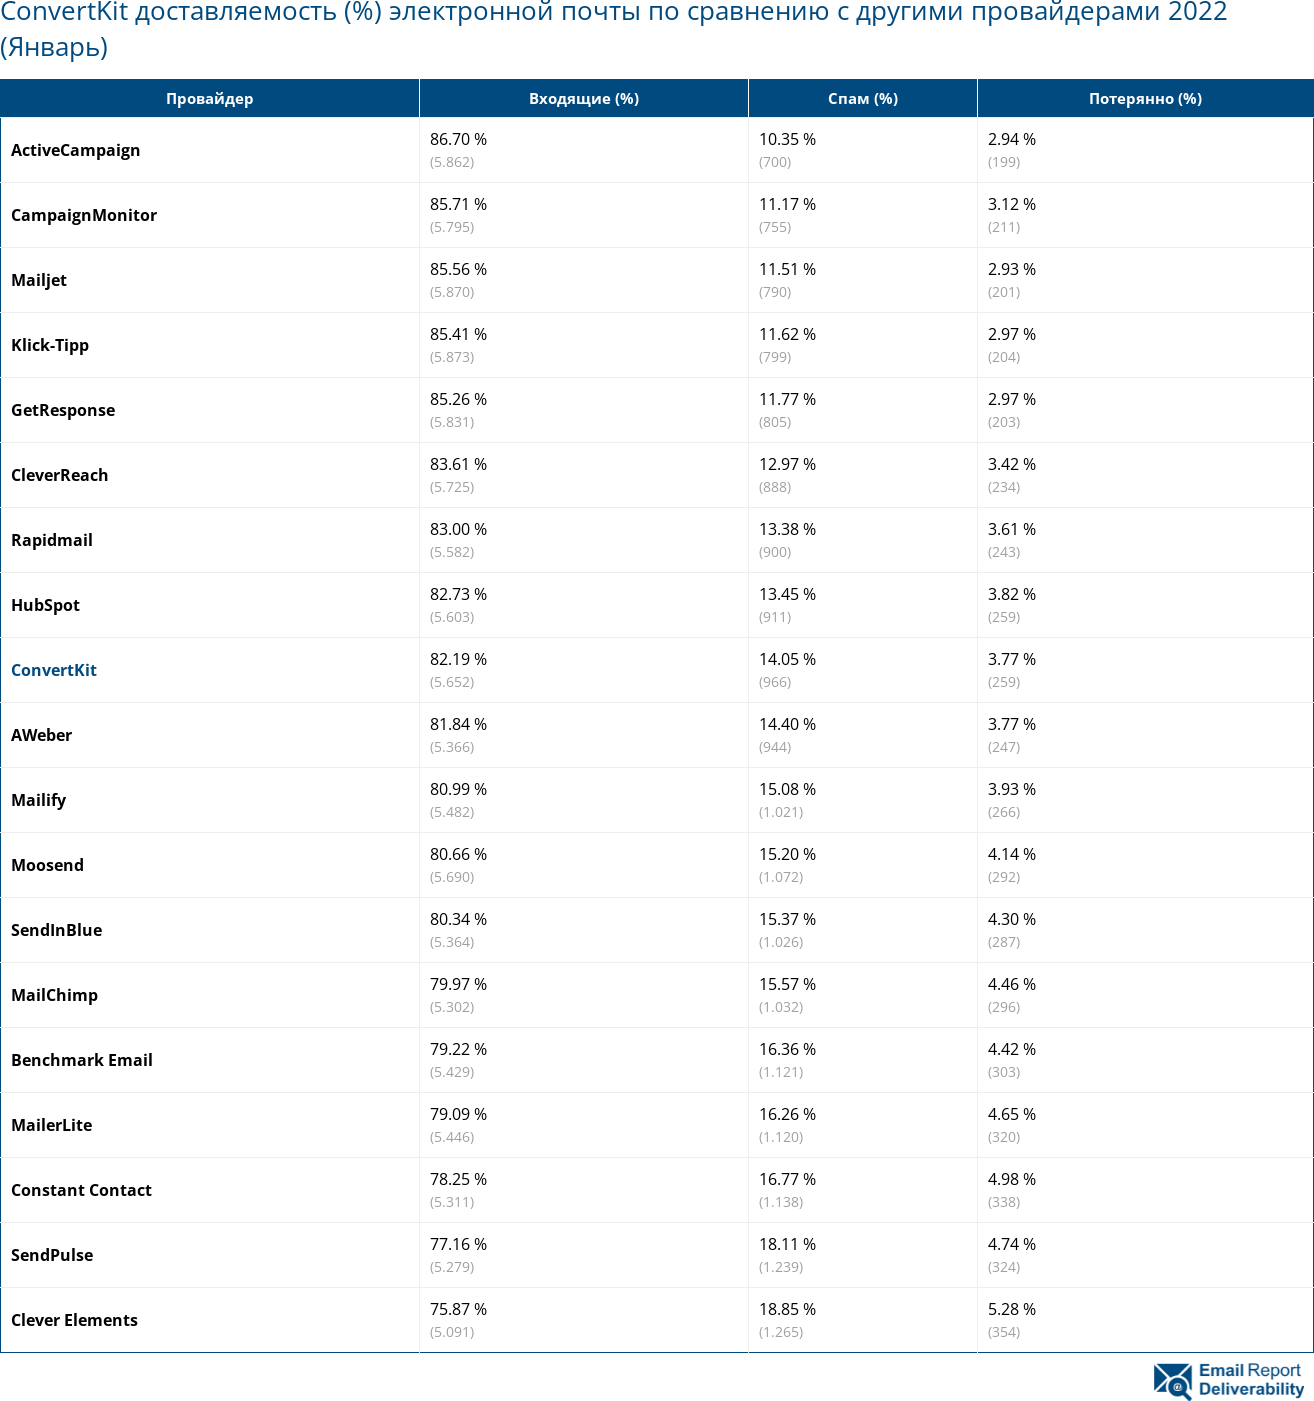 ConvertKit доставляемость (%) электронной почты по сравнению с другими провайдерами 2022 (Январь)